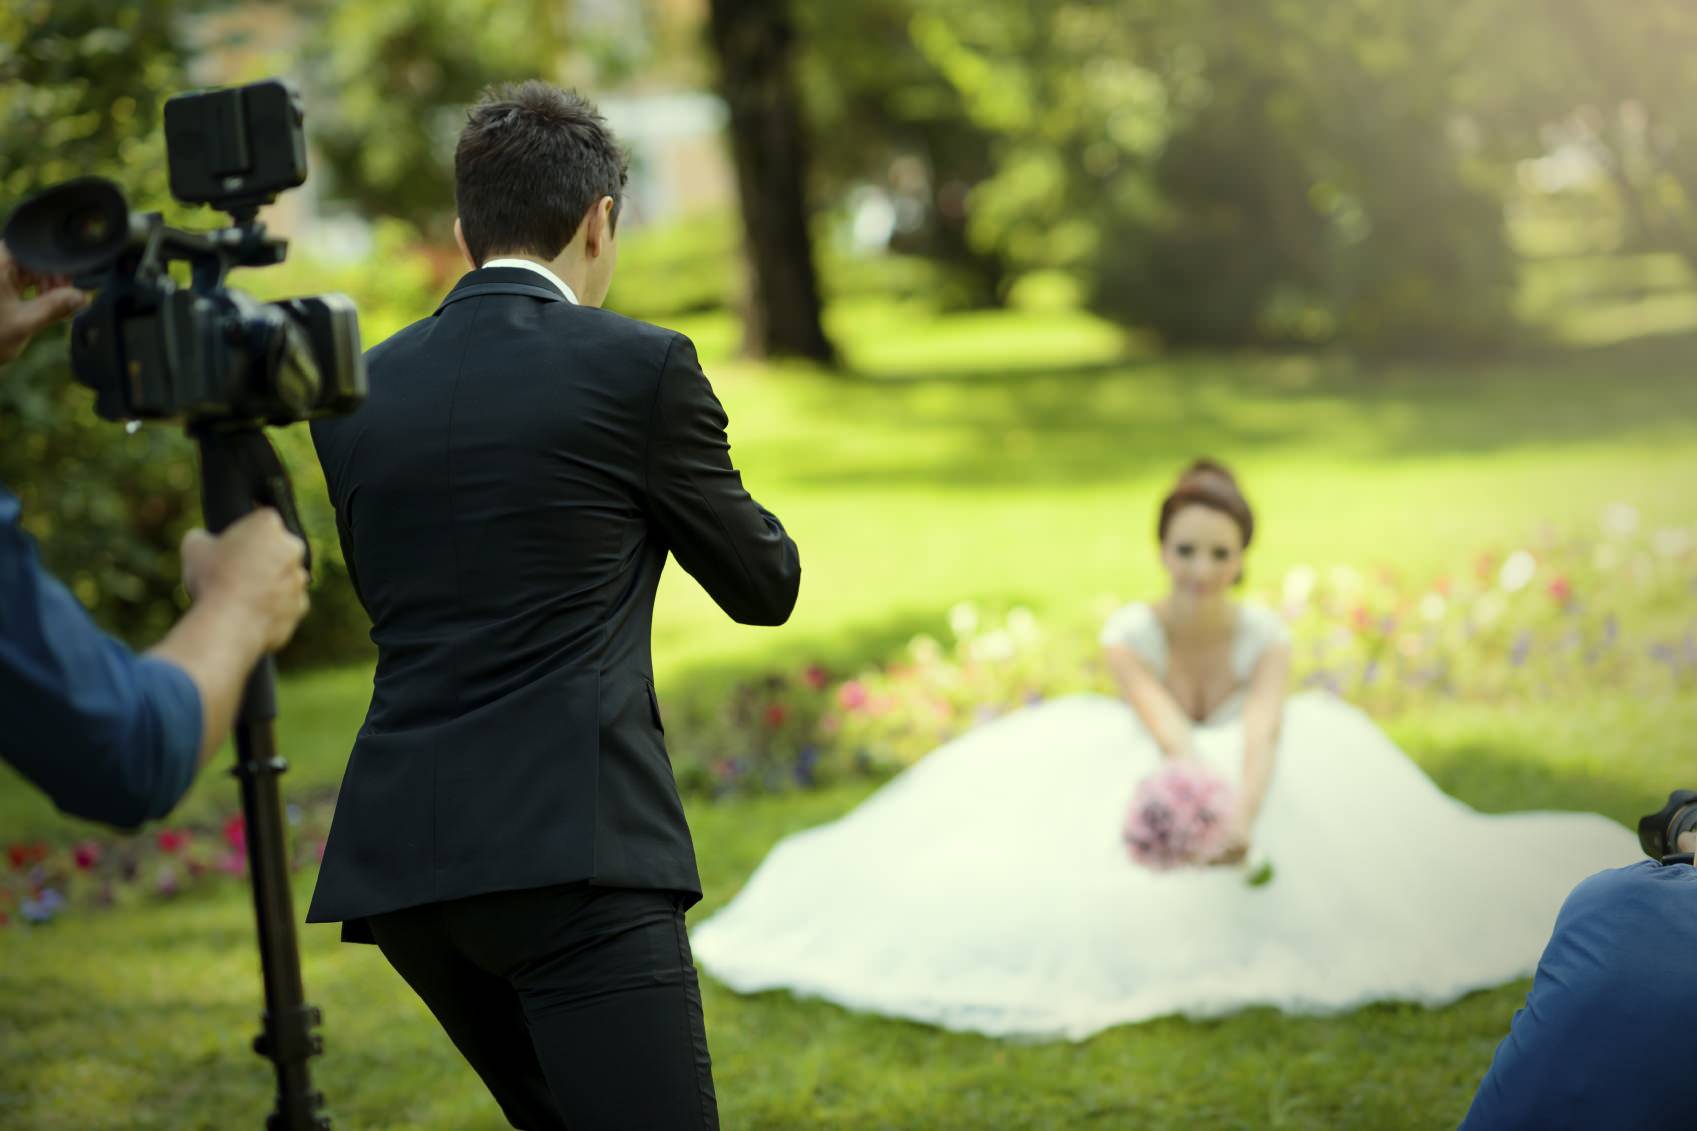 Как выбрать свадебного фотографа и где искать - советы